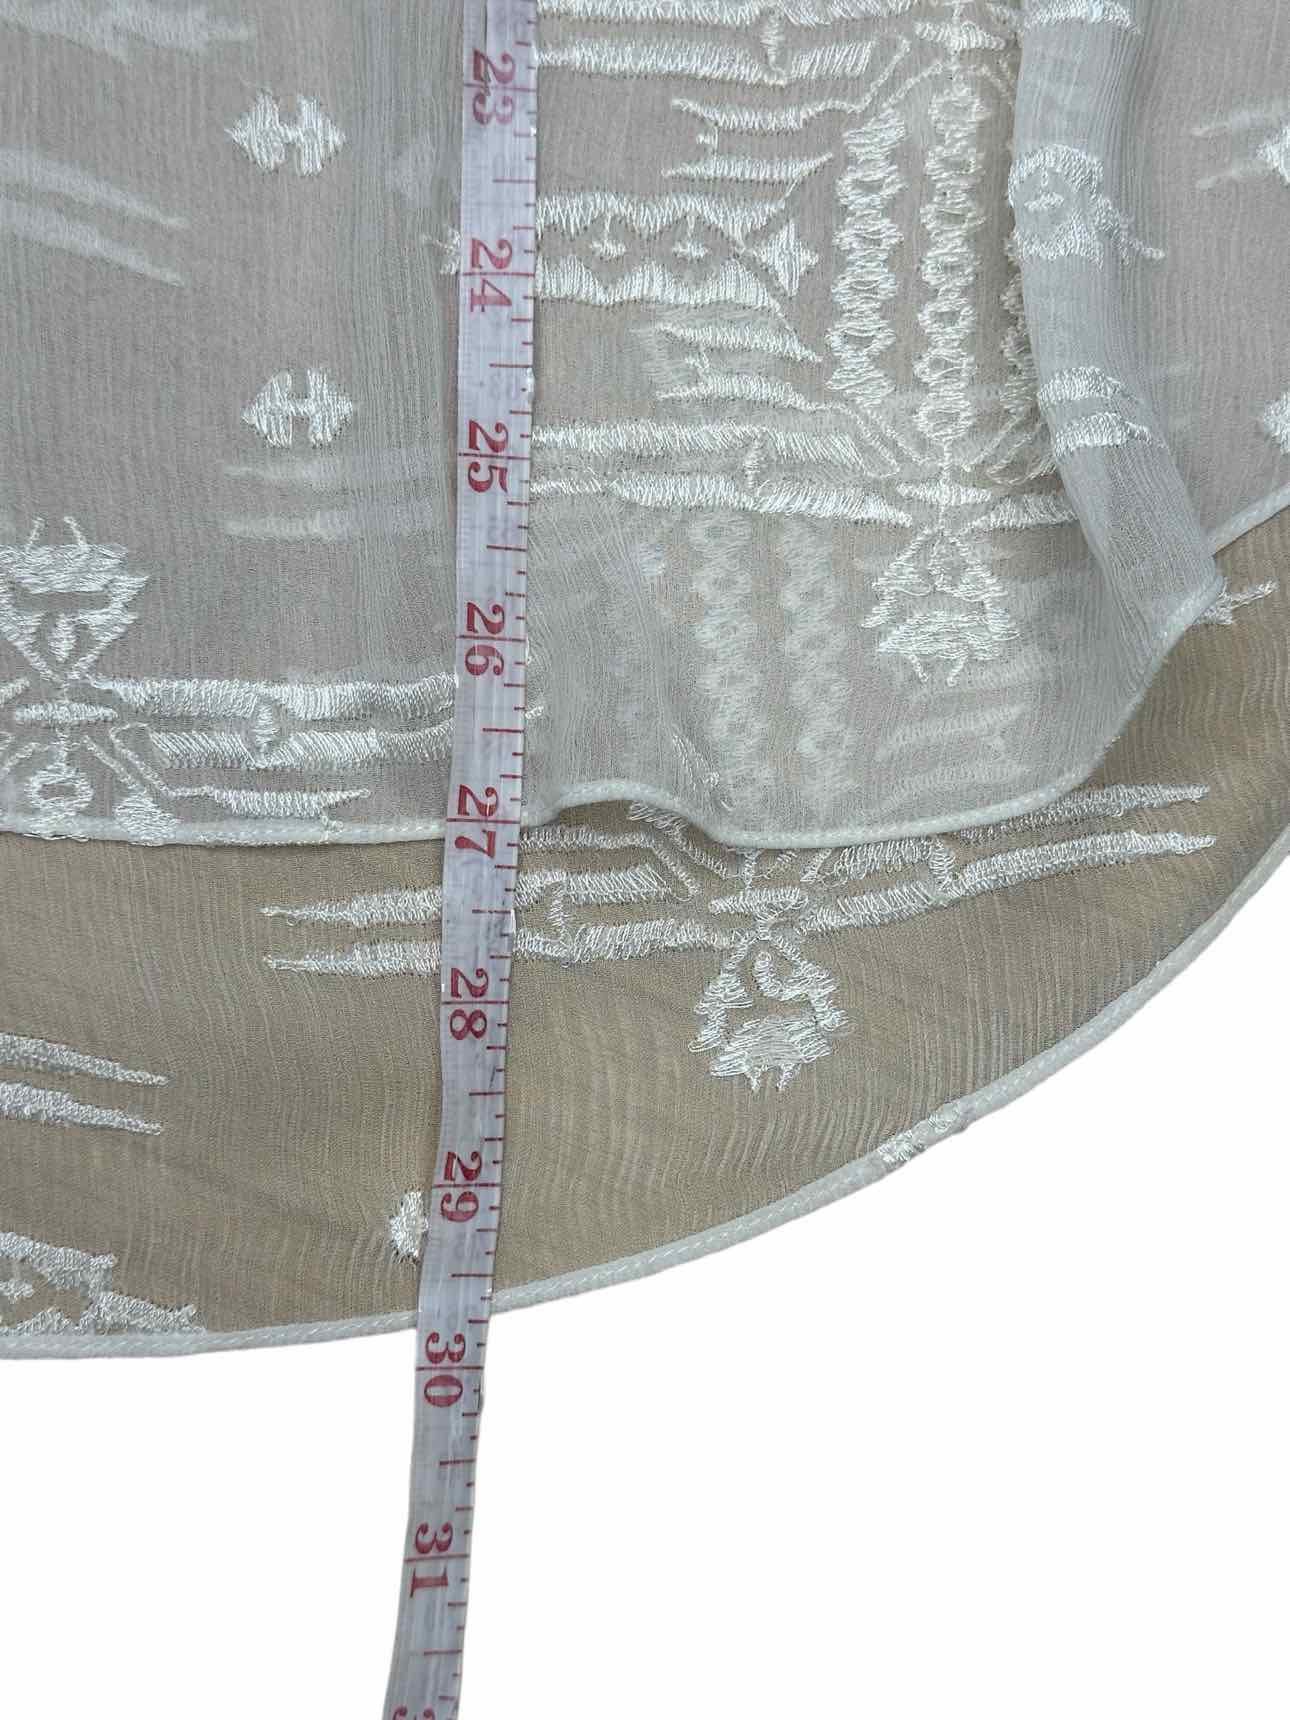 REBECCA TAYLOR Cream 100% Silk Embroidered Top Size 0